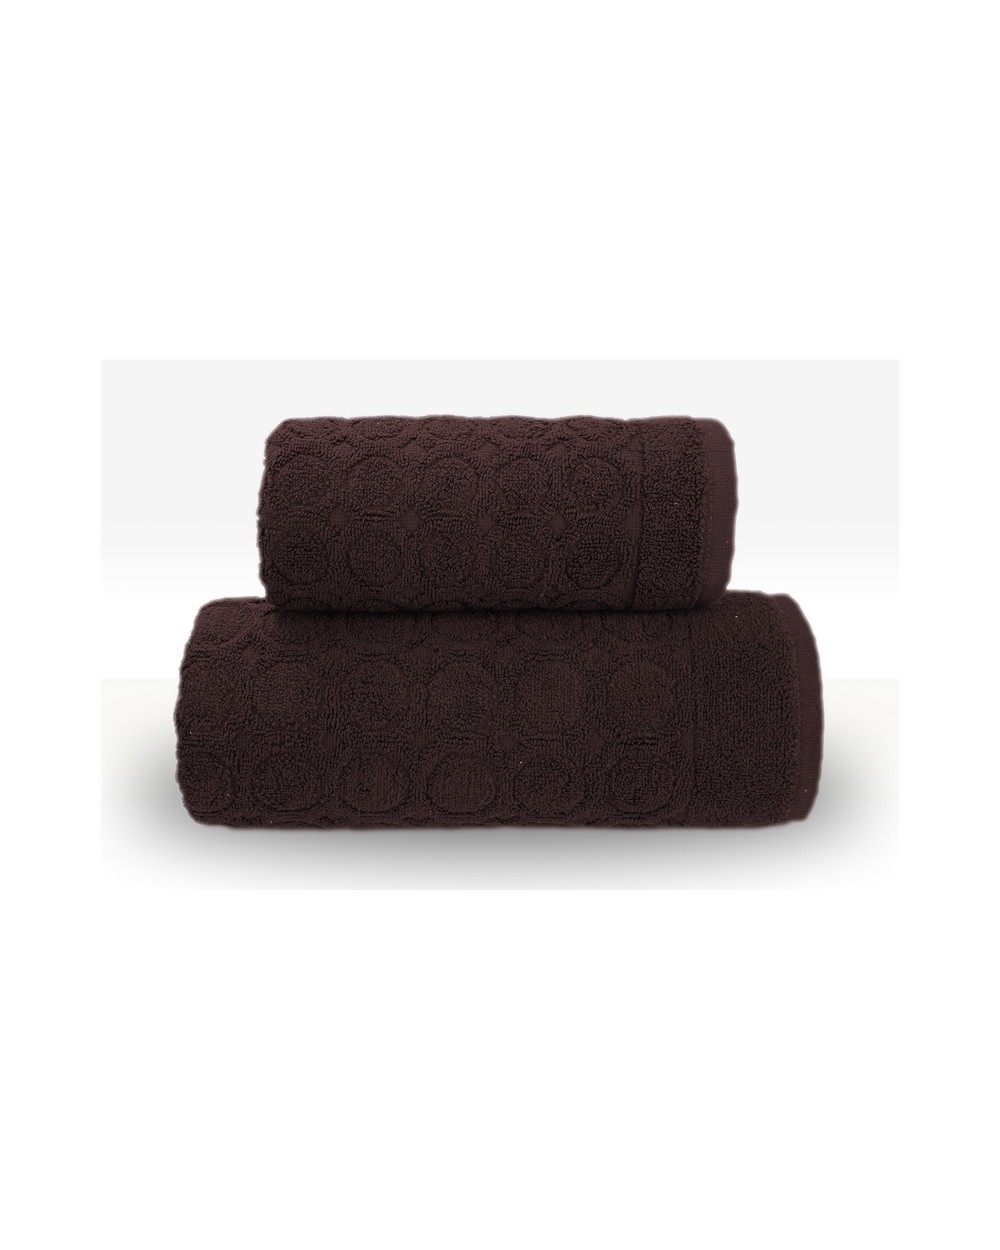 Ręcznik Pepe bawełna 70x140 brązowy